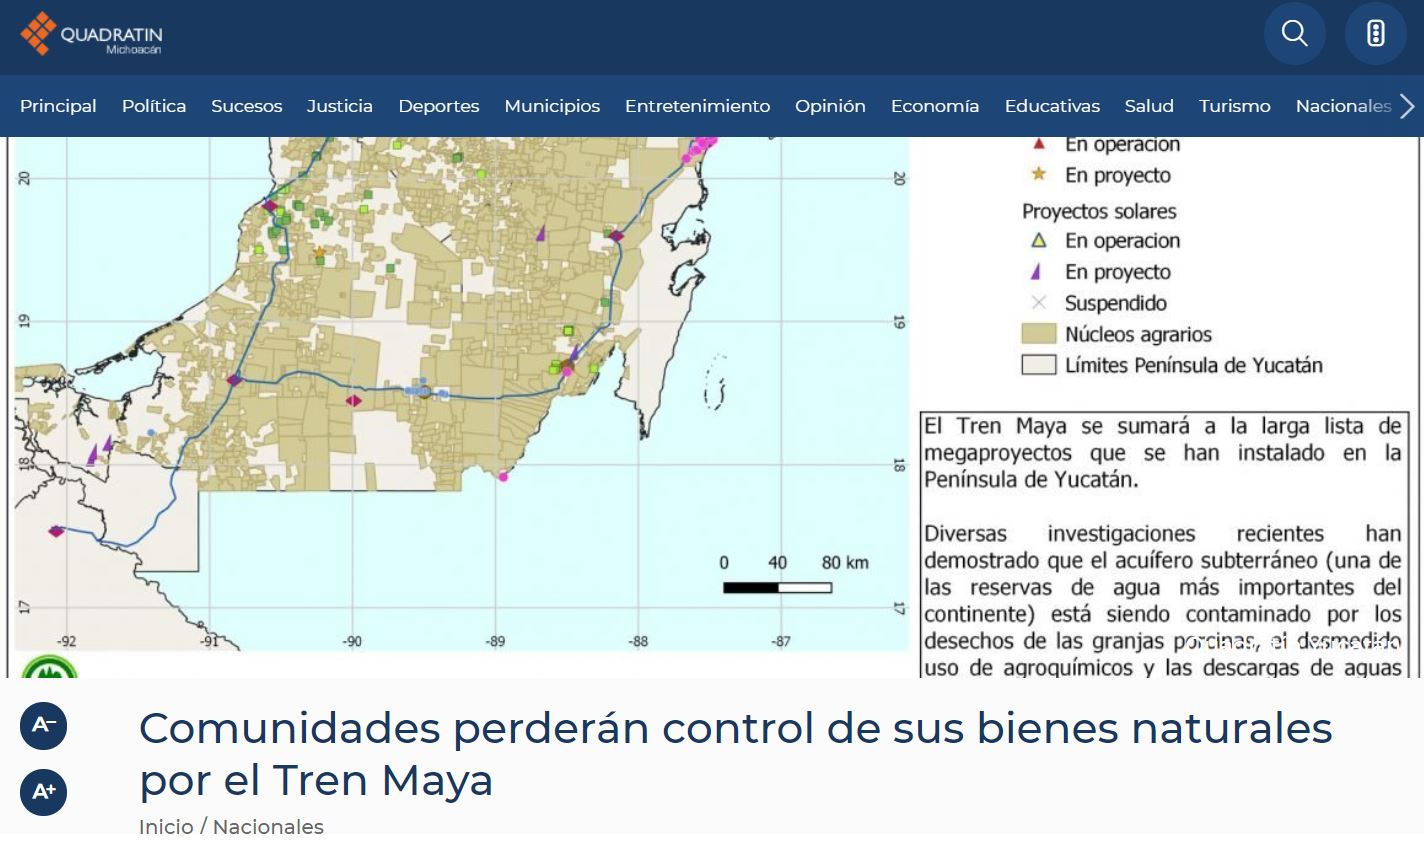 Comunidades perderán control de sus bienes naturales por el Tren Maya